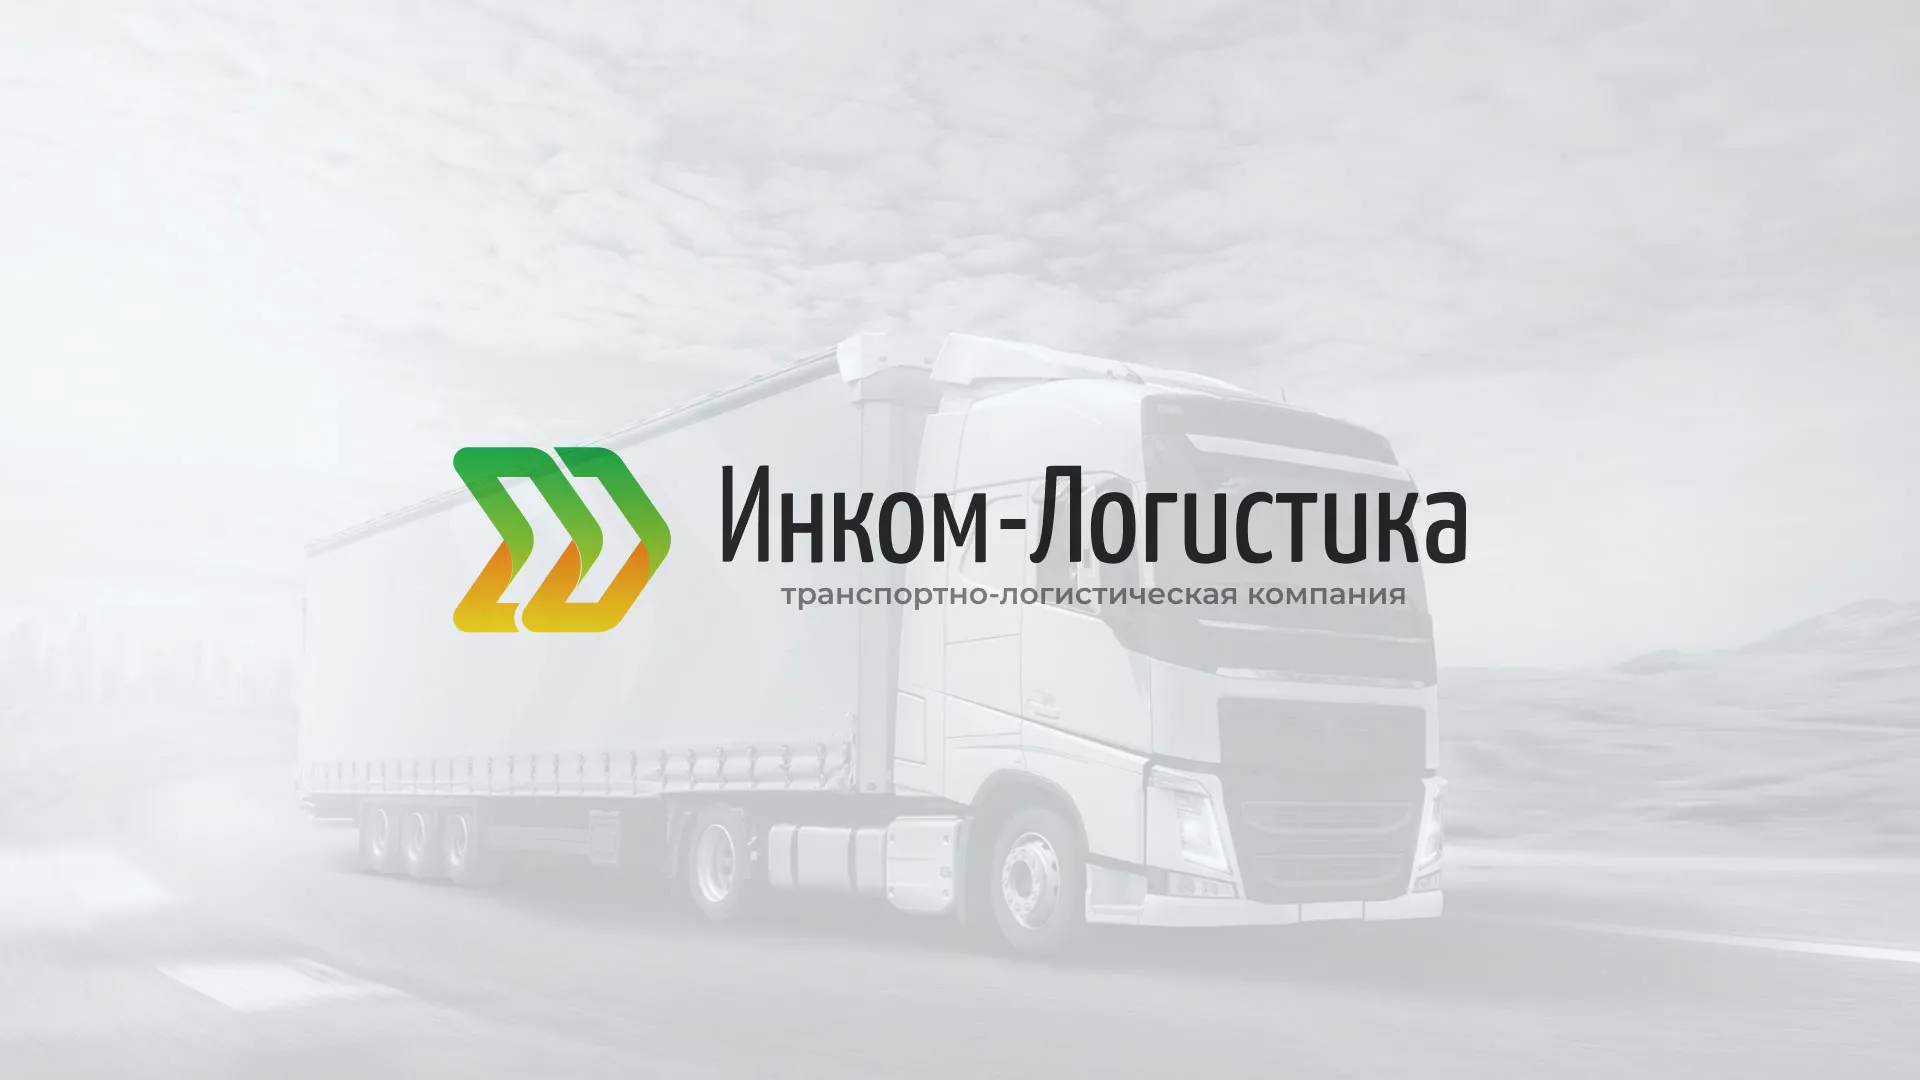 Разработка логотипа и сайта компании «Инком-Логистика» в Болотном